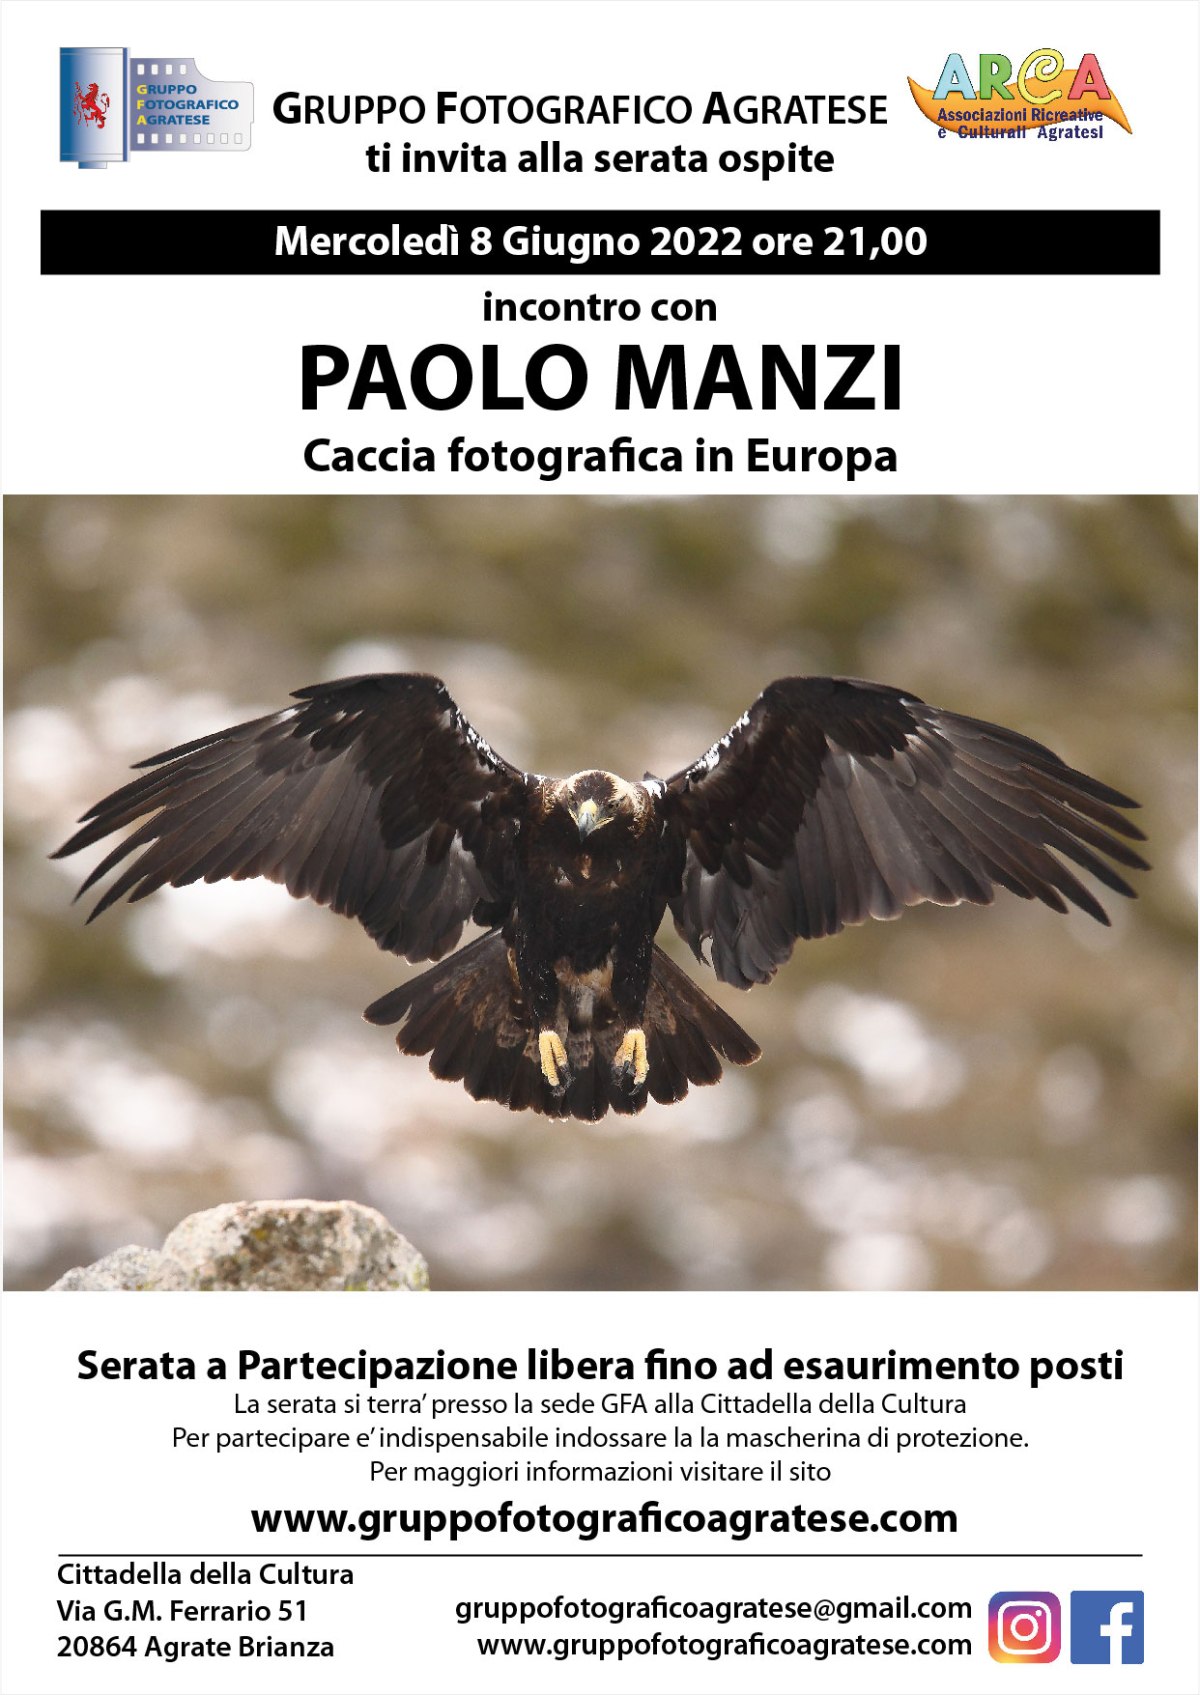 8 Giugno 2022, serata con Paolo Manzi, fotografo naturalista.